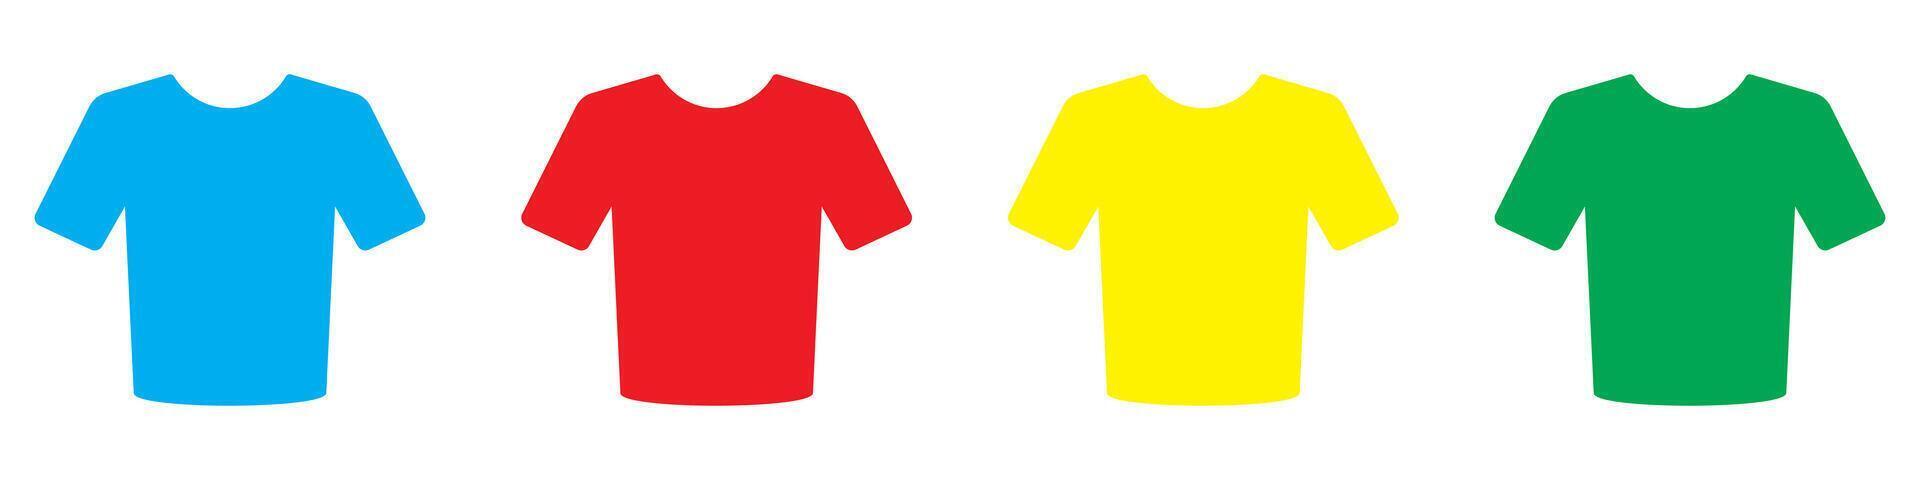 camiseta modelo diseño. cuatro colores colocar. fvector ilustración. vector